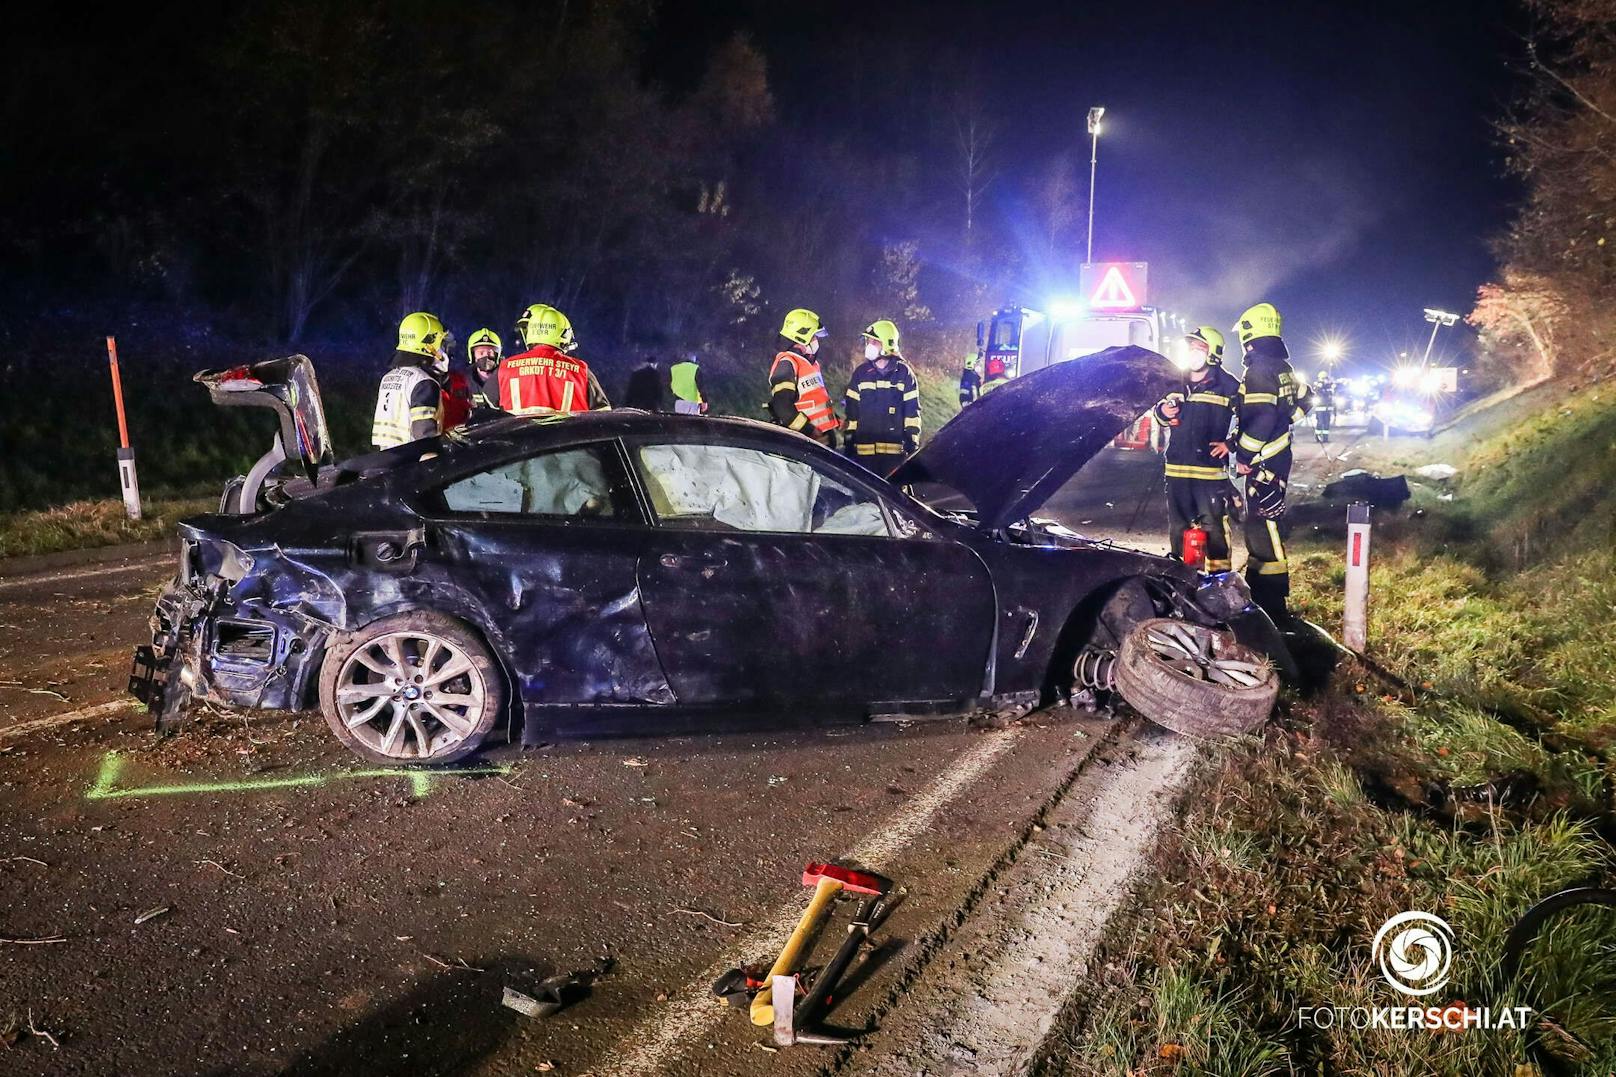 Bei einem illegalen Straßenrennen in Dietach bei Steyr wurde ein 21-jähriger Mann schwer verletzt.